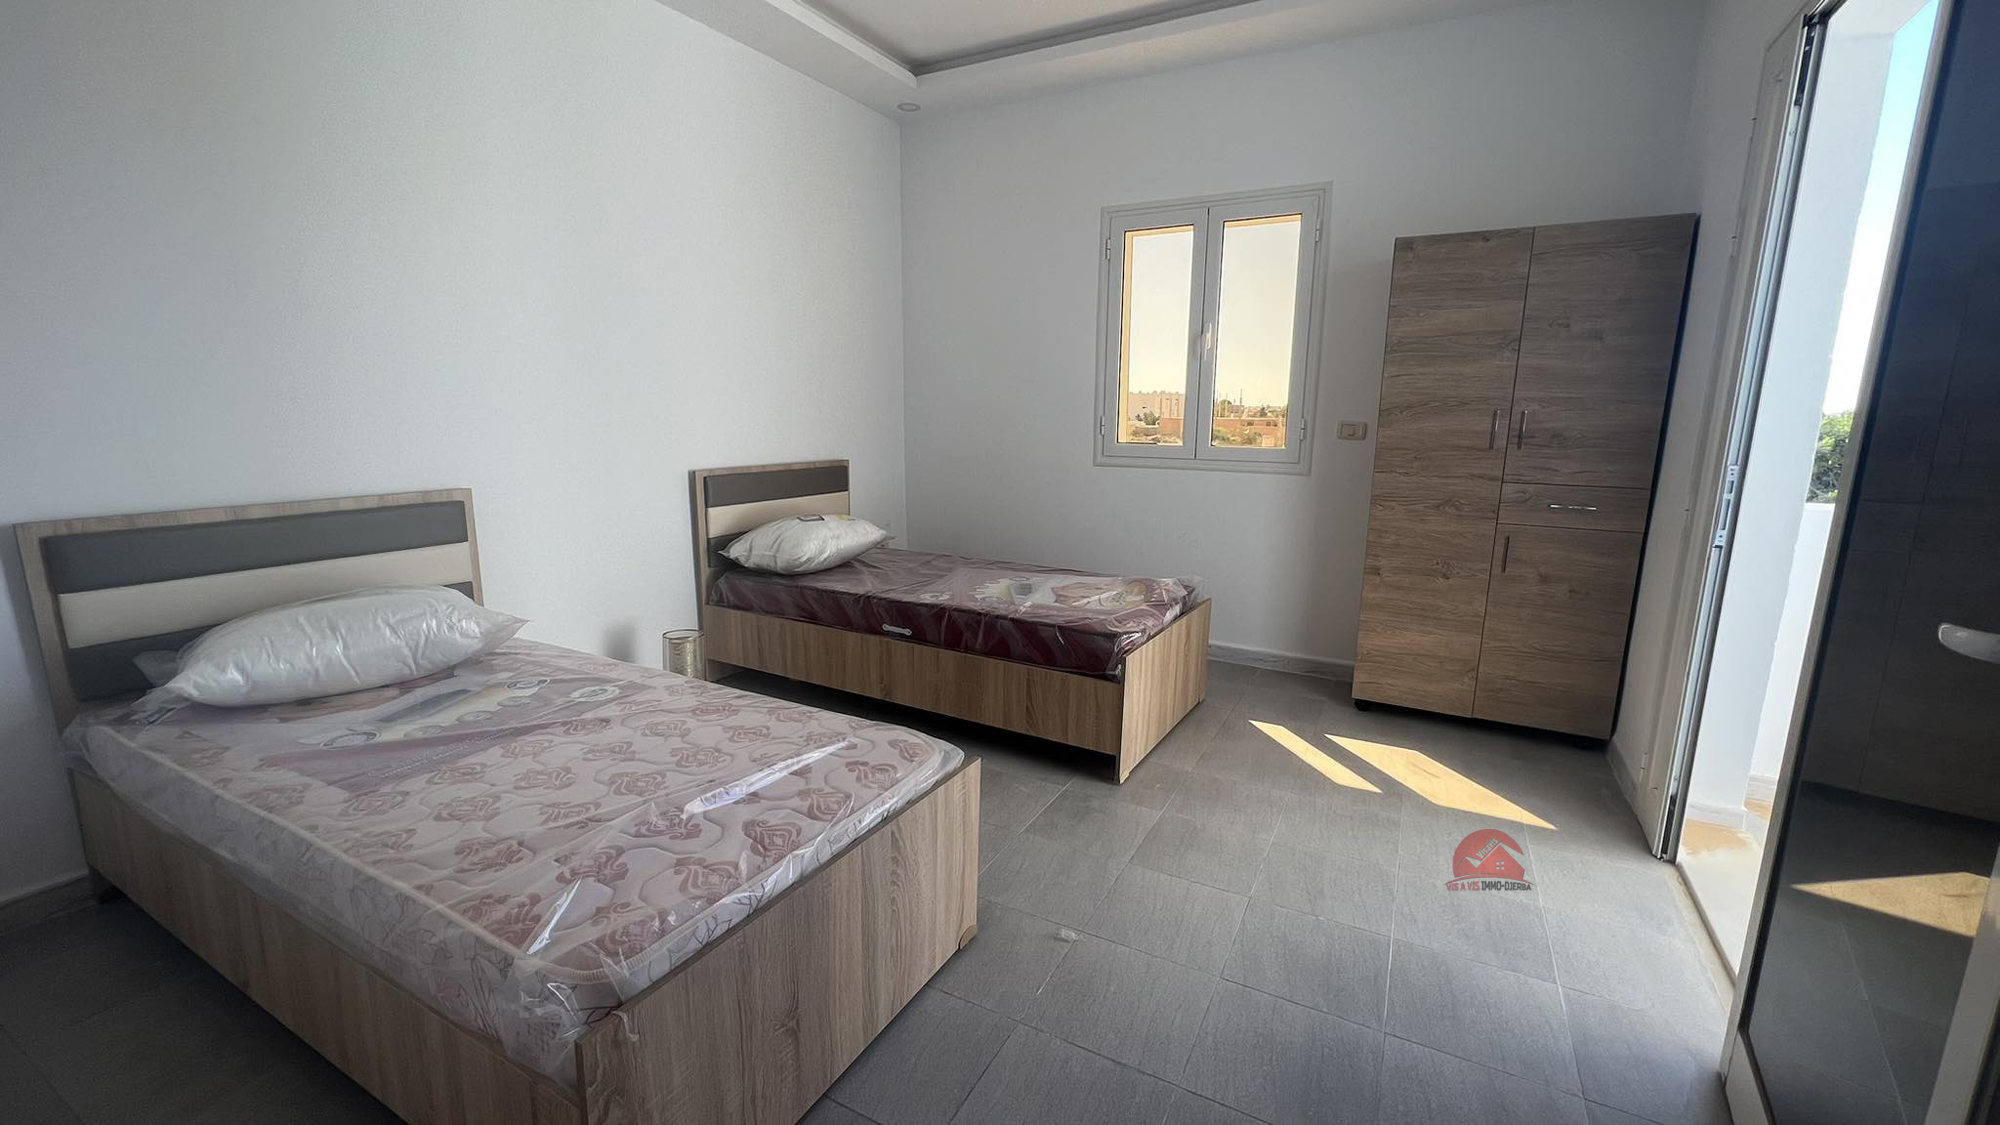 Djerba - Midoun Zone Hoteliere Location Appart. 3 pices Appartement a la zone touristique djerba ref l726